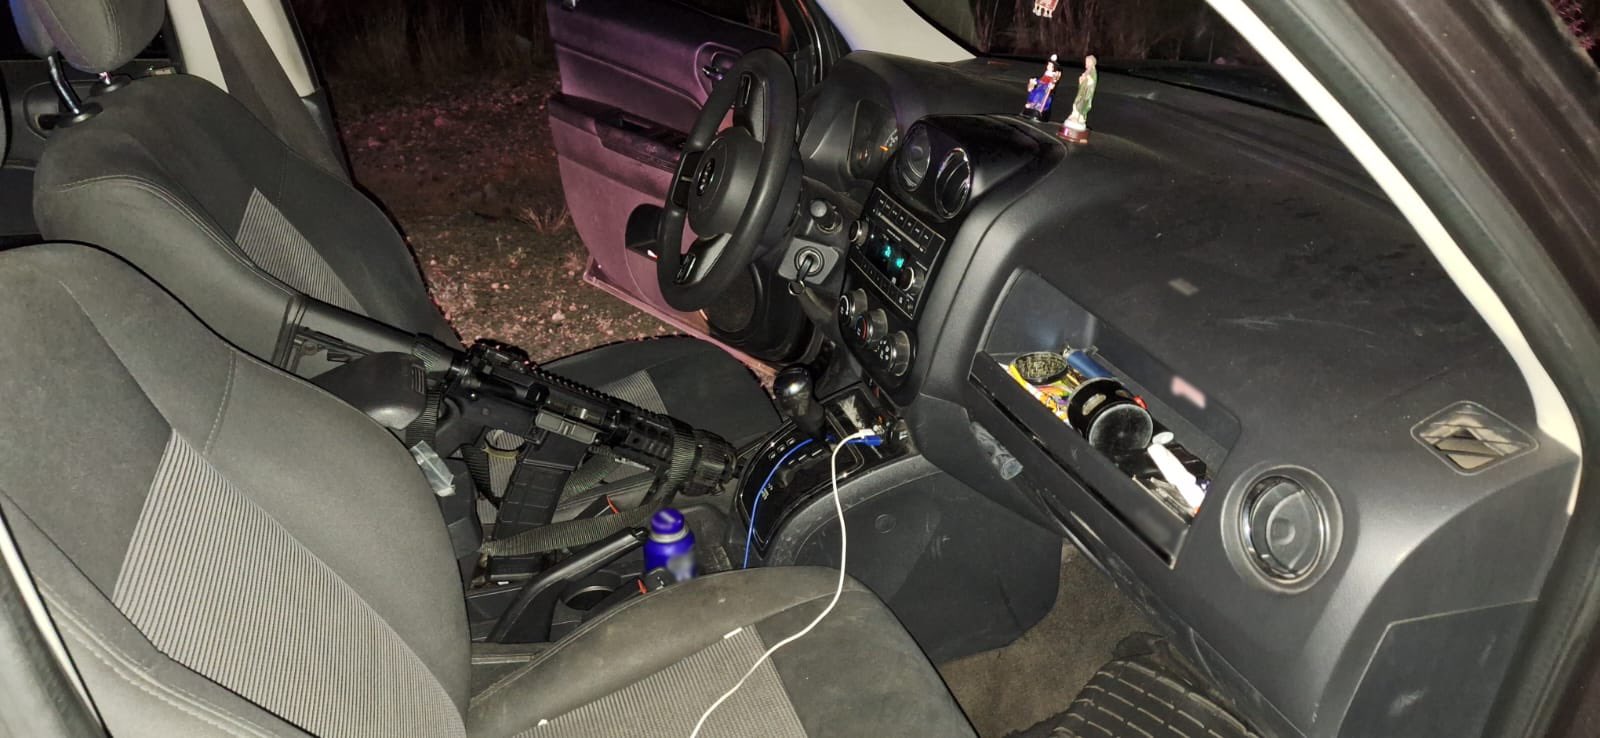 Armas incautadas dentro de autos robados en Sonora (GN)